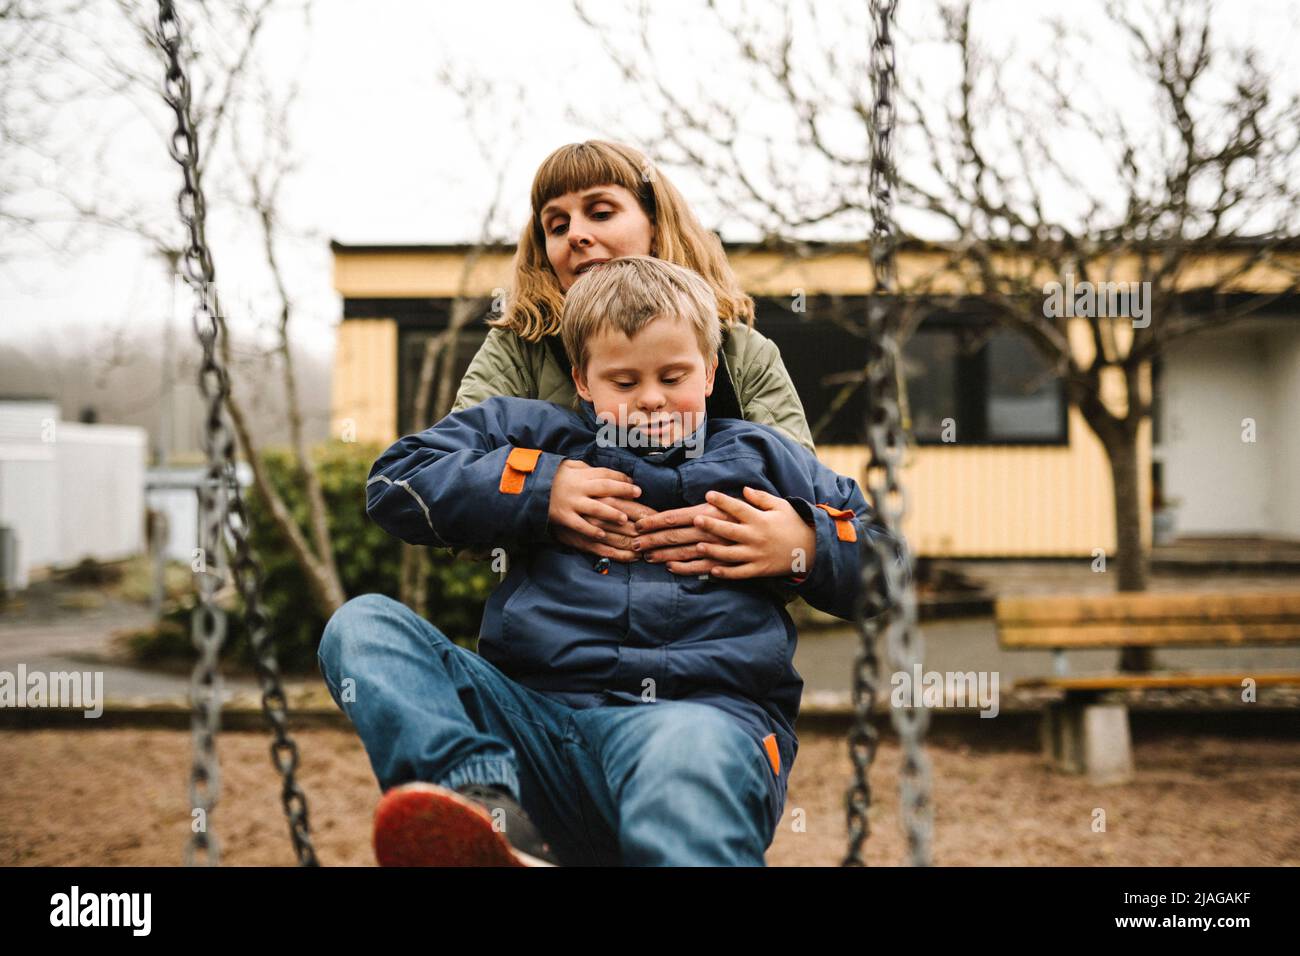 Sohn mit Down-Syndrom, der Mutter hilft, während er im Schaukel im Park sitzt Stockfoto